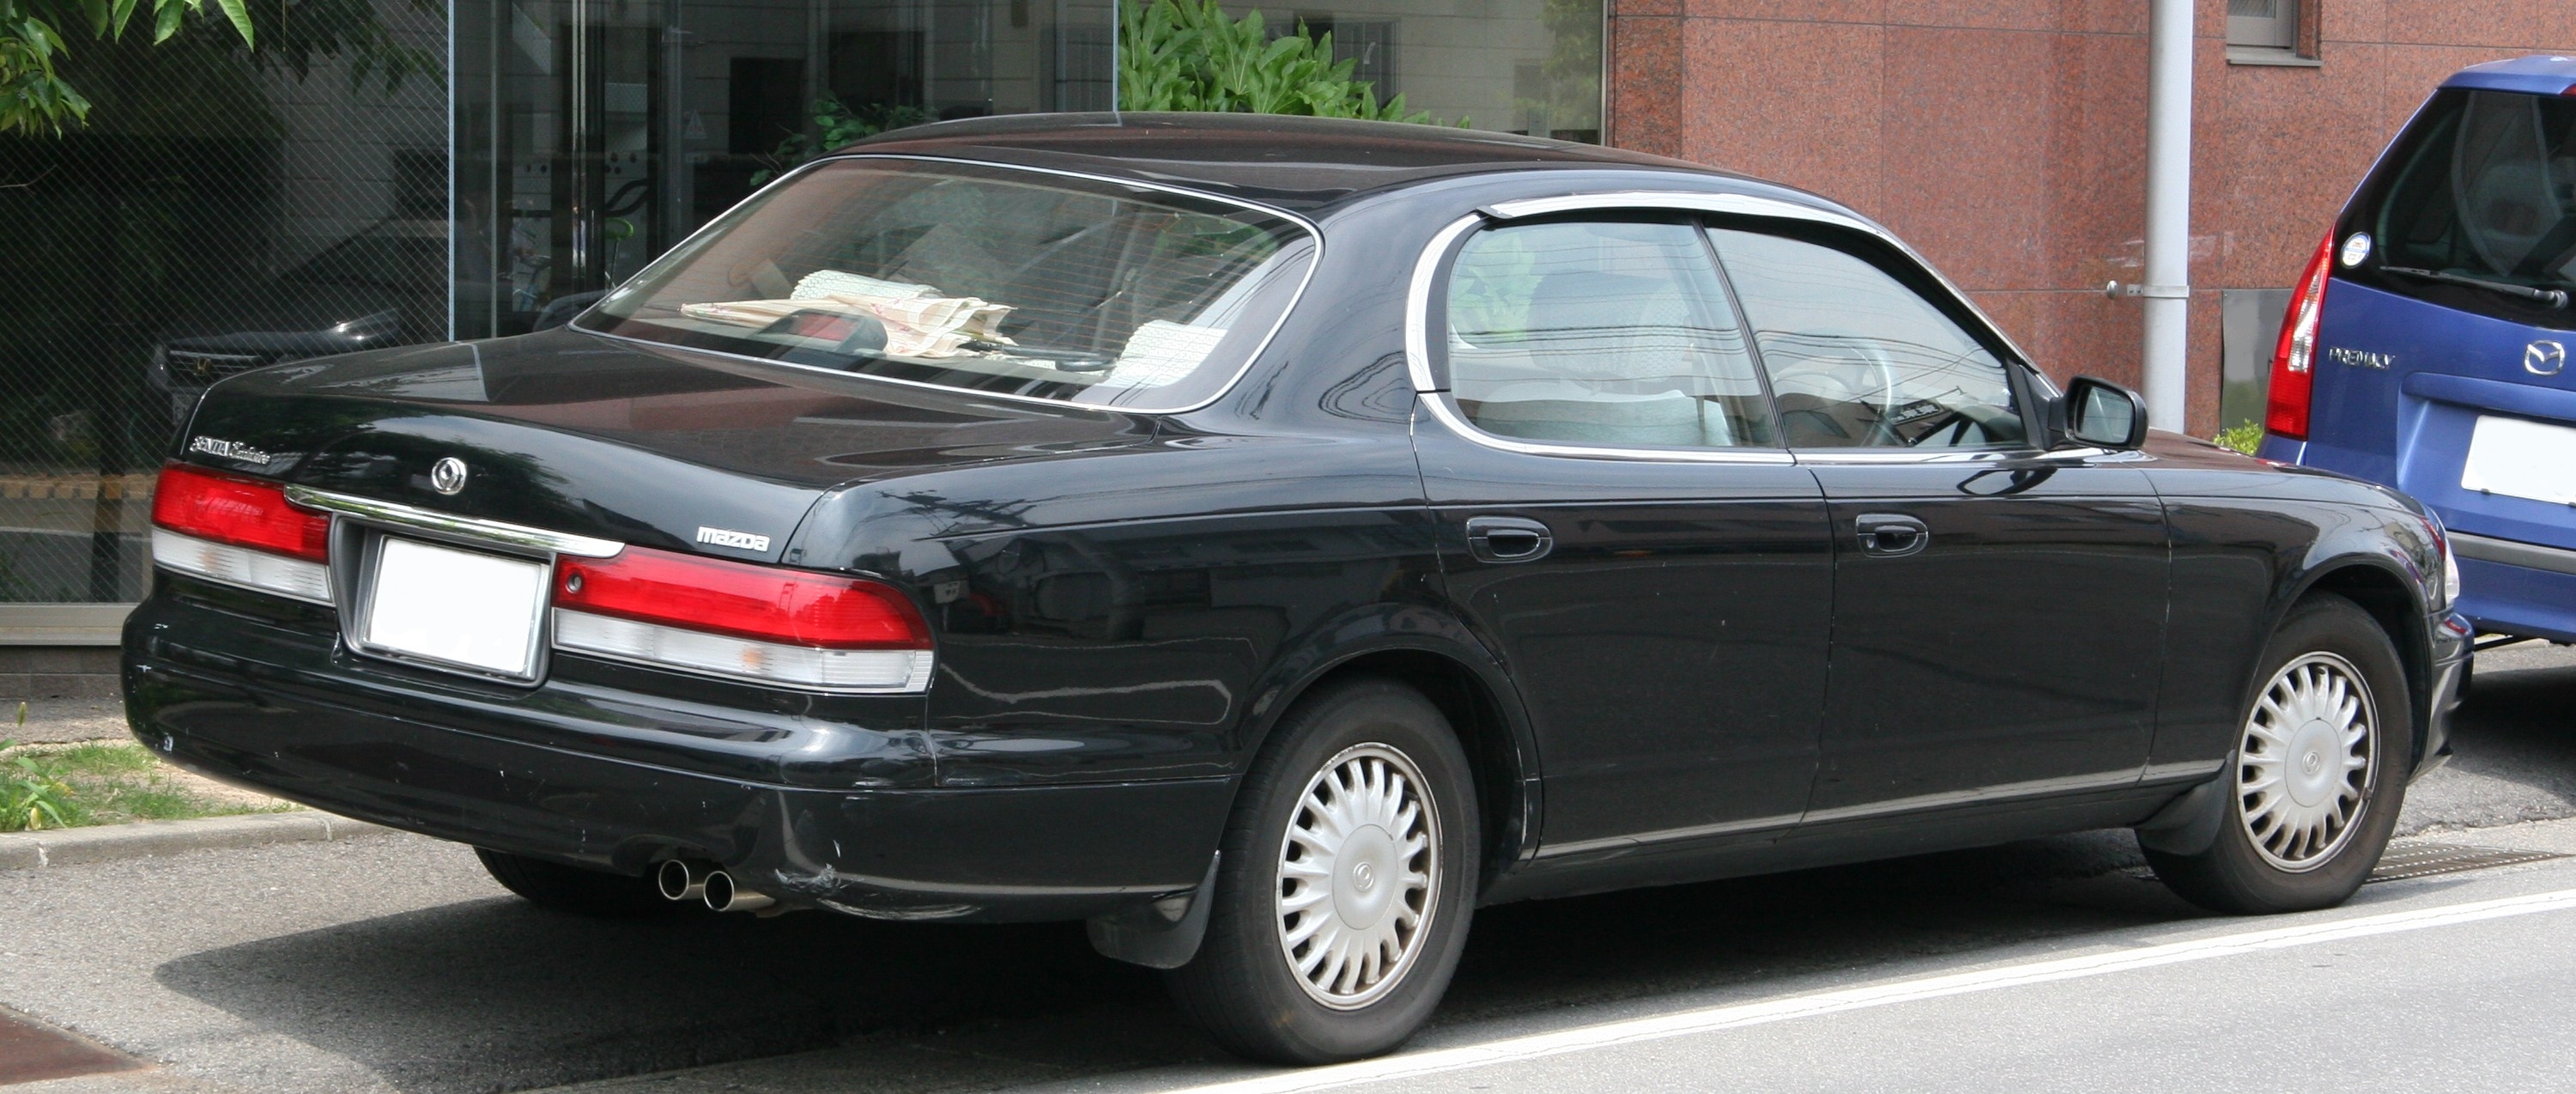 File:1995-1997 Mazda Sentia rear.jpg